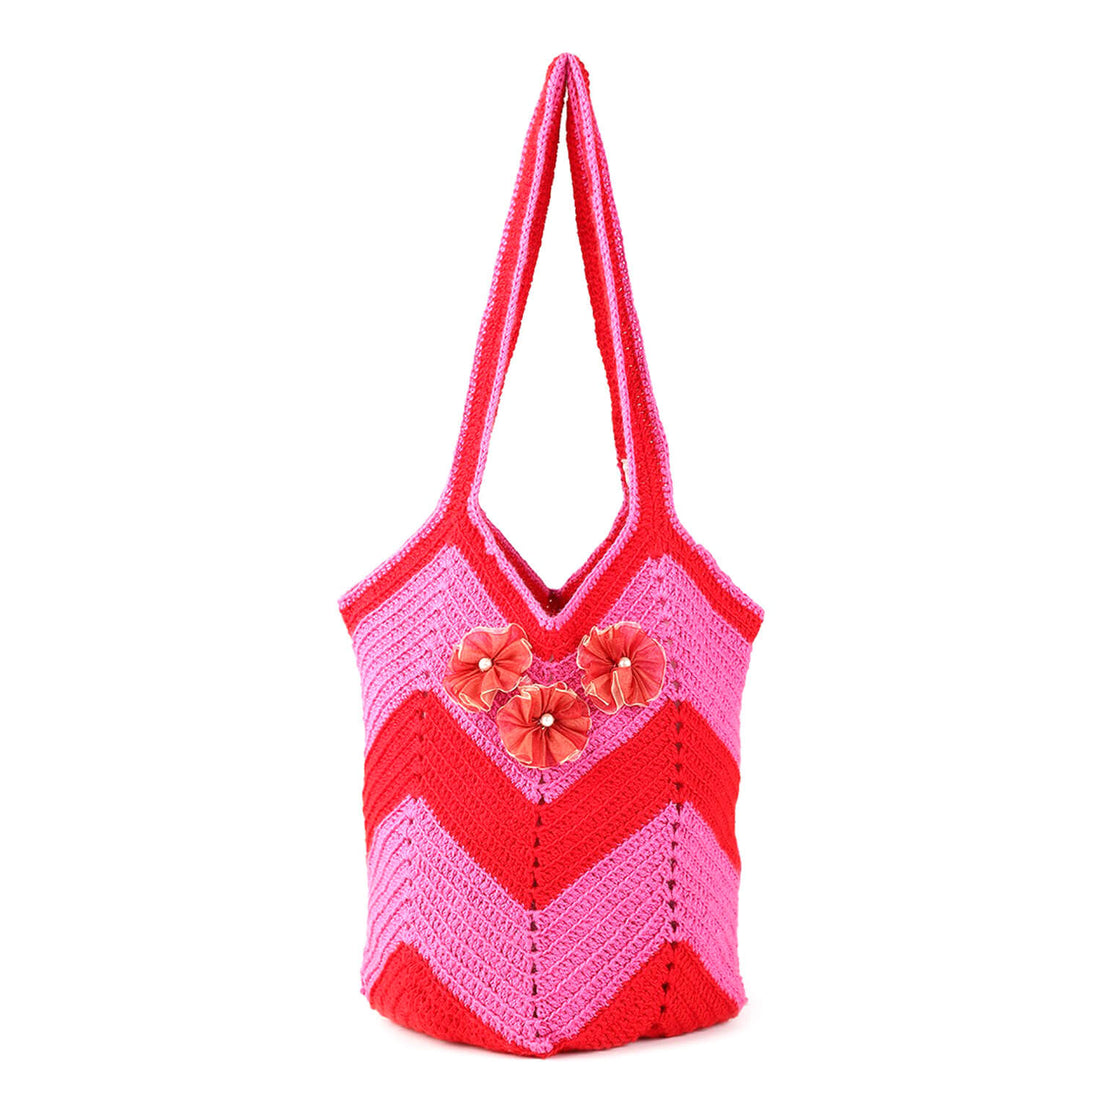 Handmade Crochet Hobo Market Bag - Red, Pink 2785